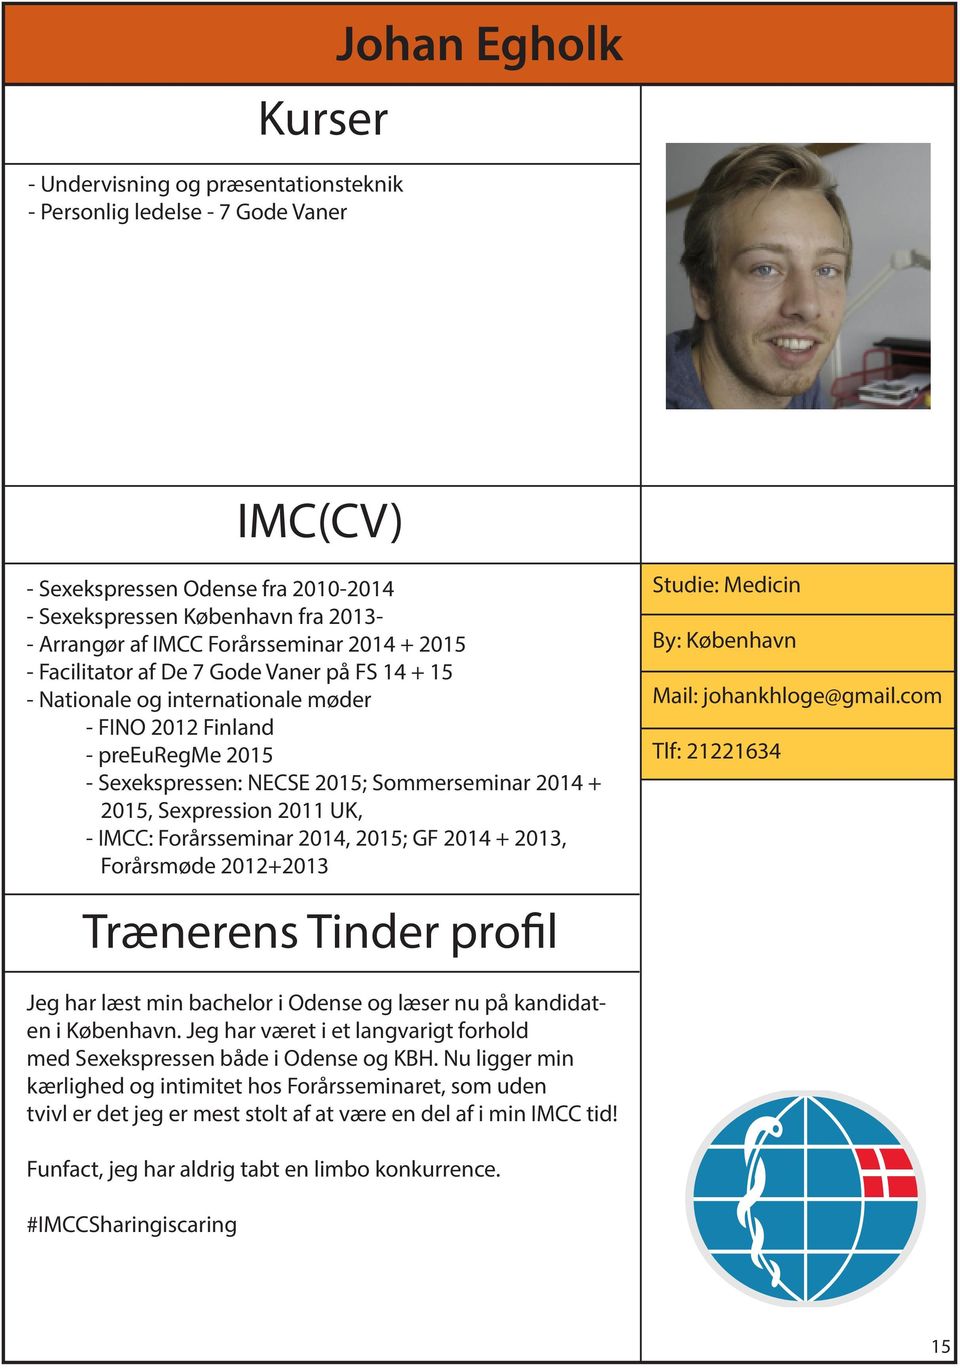 UK, - IMCC: Forårsseminar 2014, 2015; GF 2014 + 2013, Forårsmøde 2012+2013 Studie: Medicin By: København Mail: johankhloge@gmail.